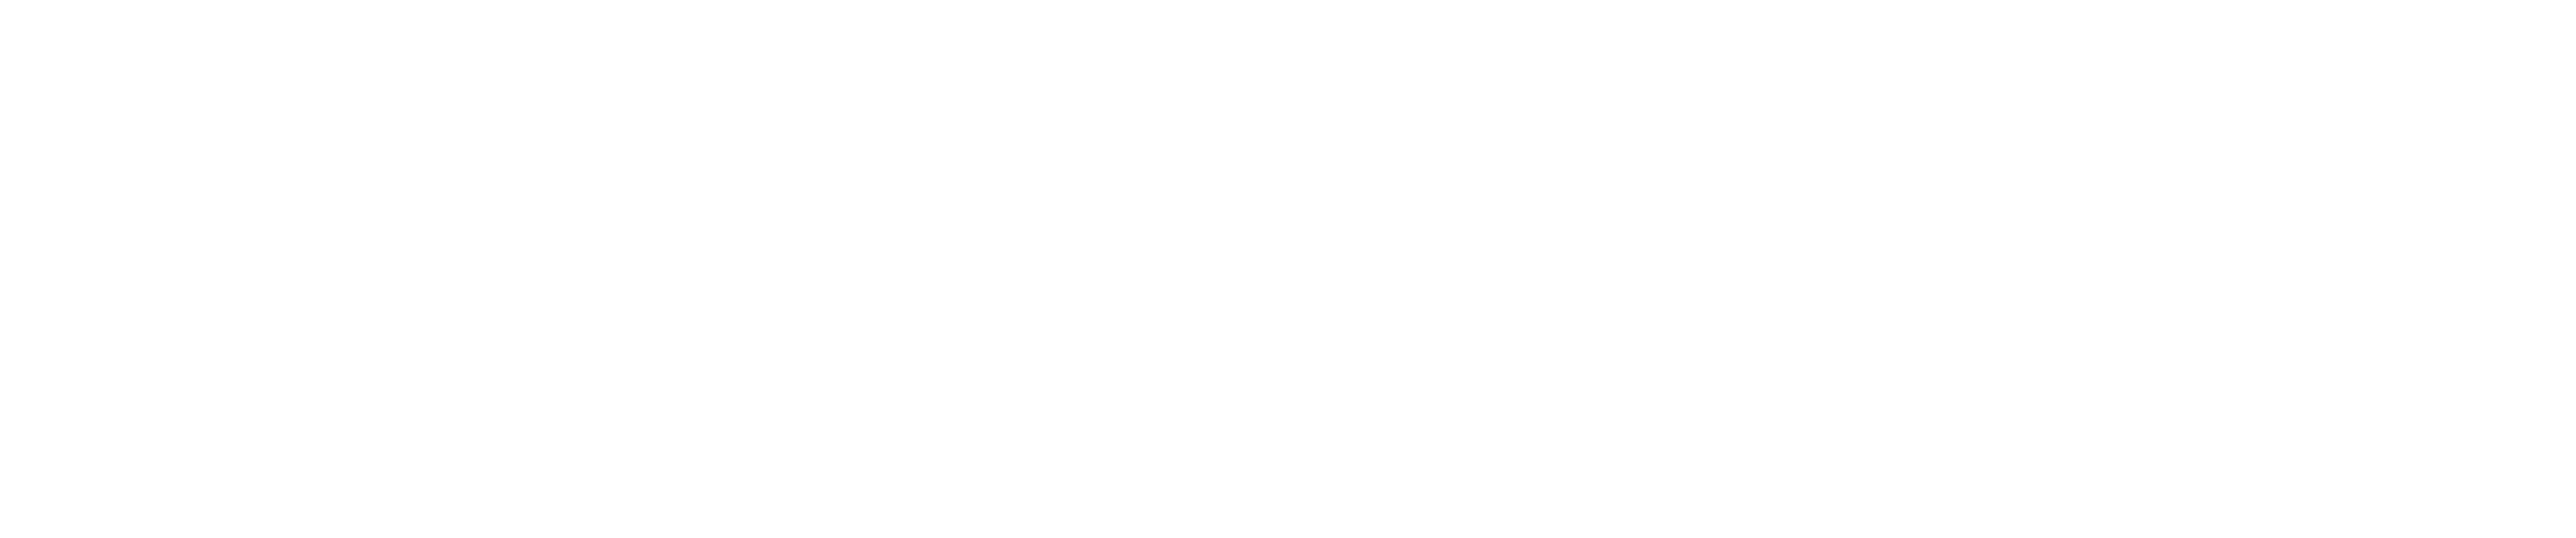 logo_fulcrum_white